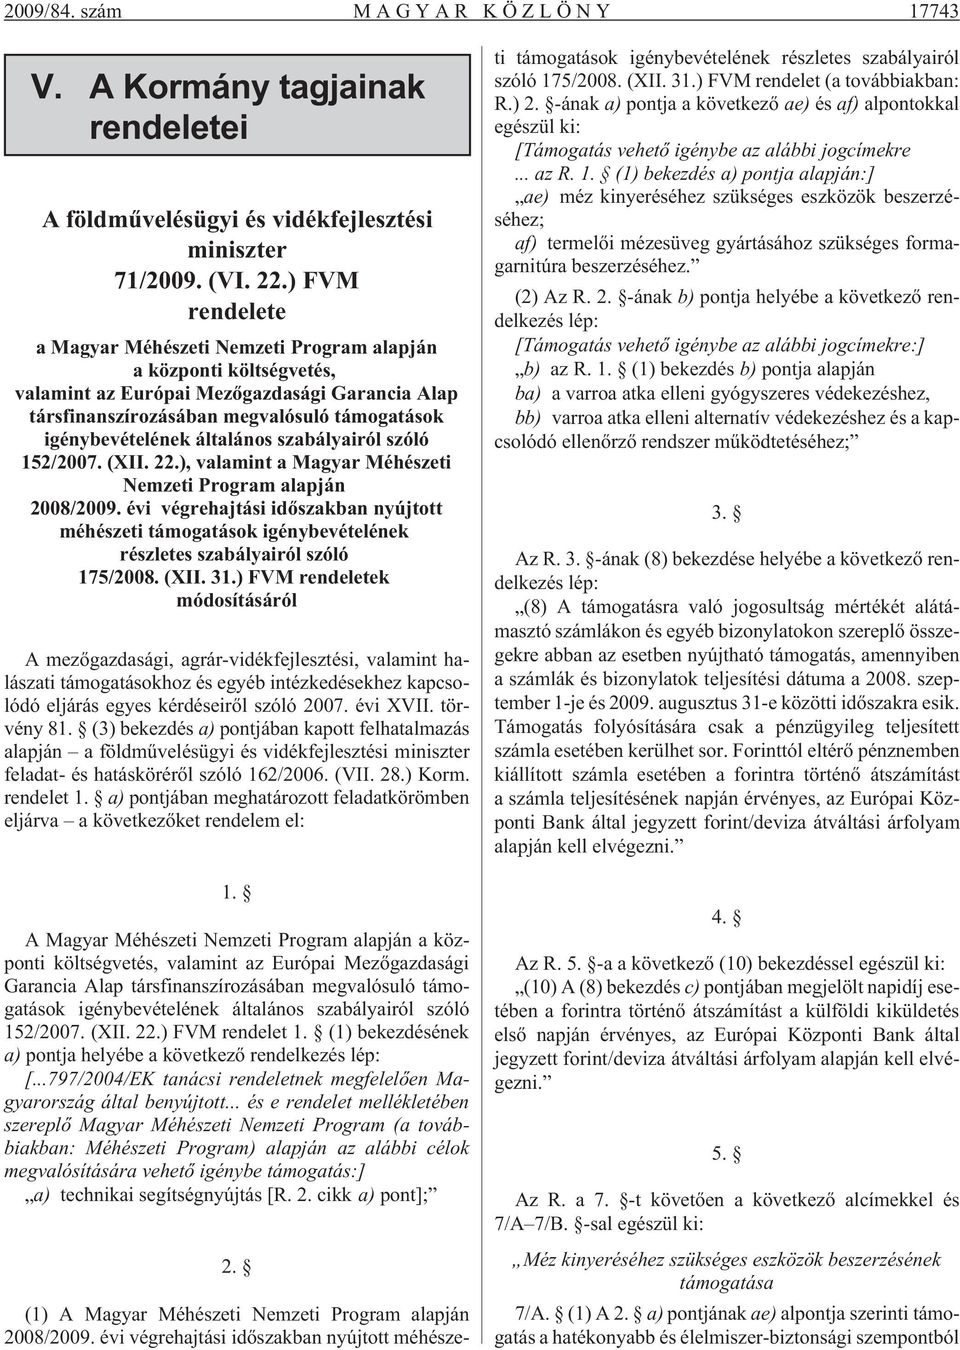 általános szabályairól szóló 152/2007. (XII. 22.), valamint a Magyar Méhészeti Nemzeti Program alapján 2008/2009.